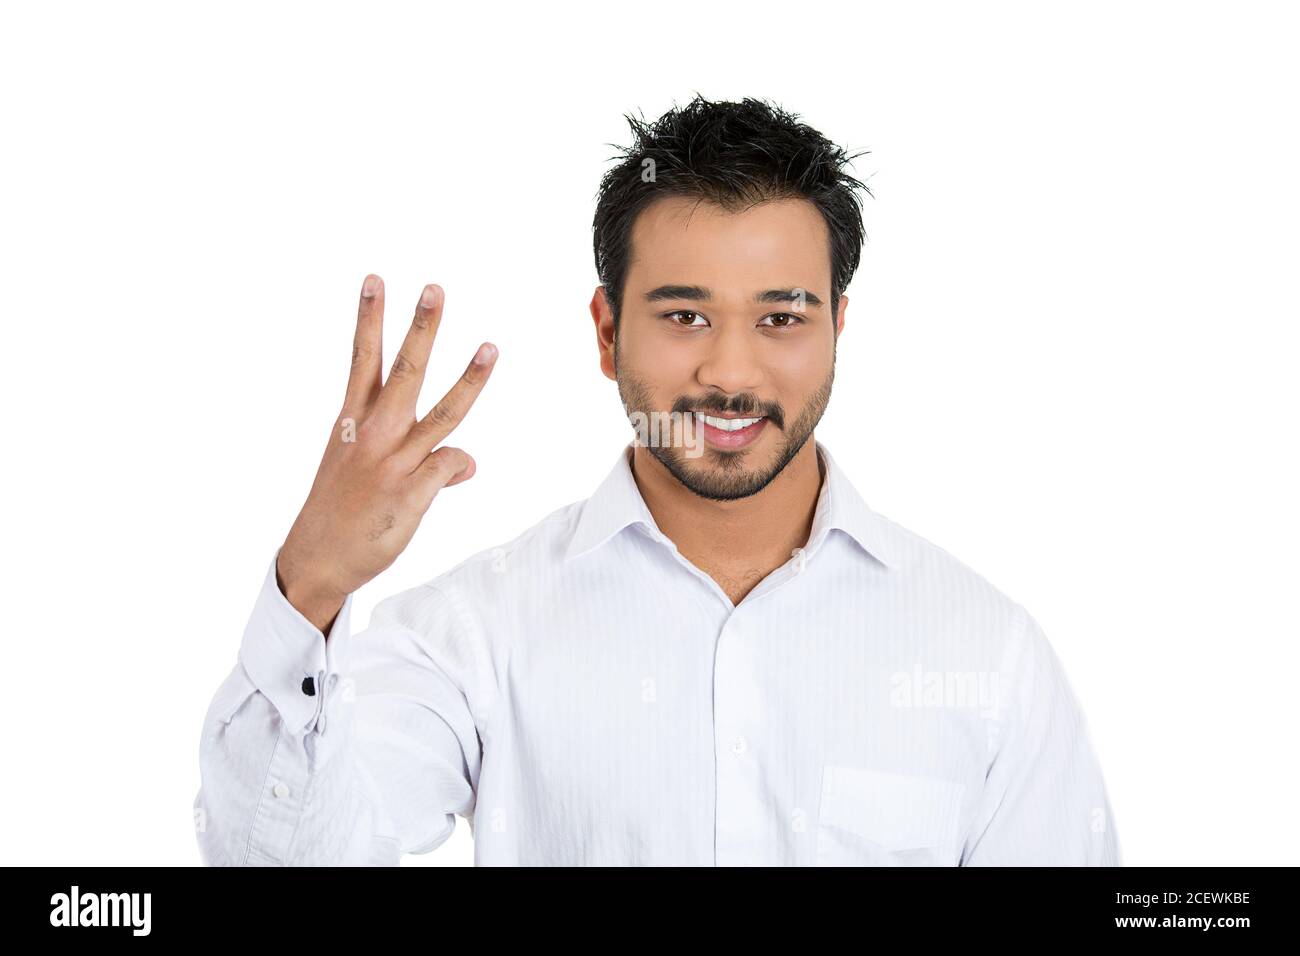 Primer retrato de un joven guapo dando un gesto de tres dedos con la mano aislada sobre fondo blanco. Expresión facial de emoción positiva Foto de stock